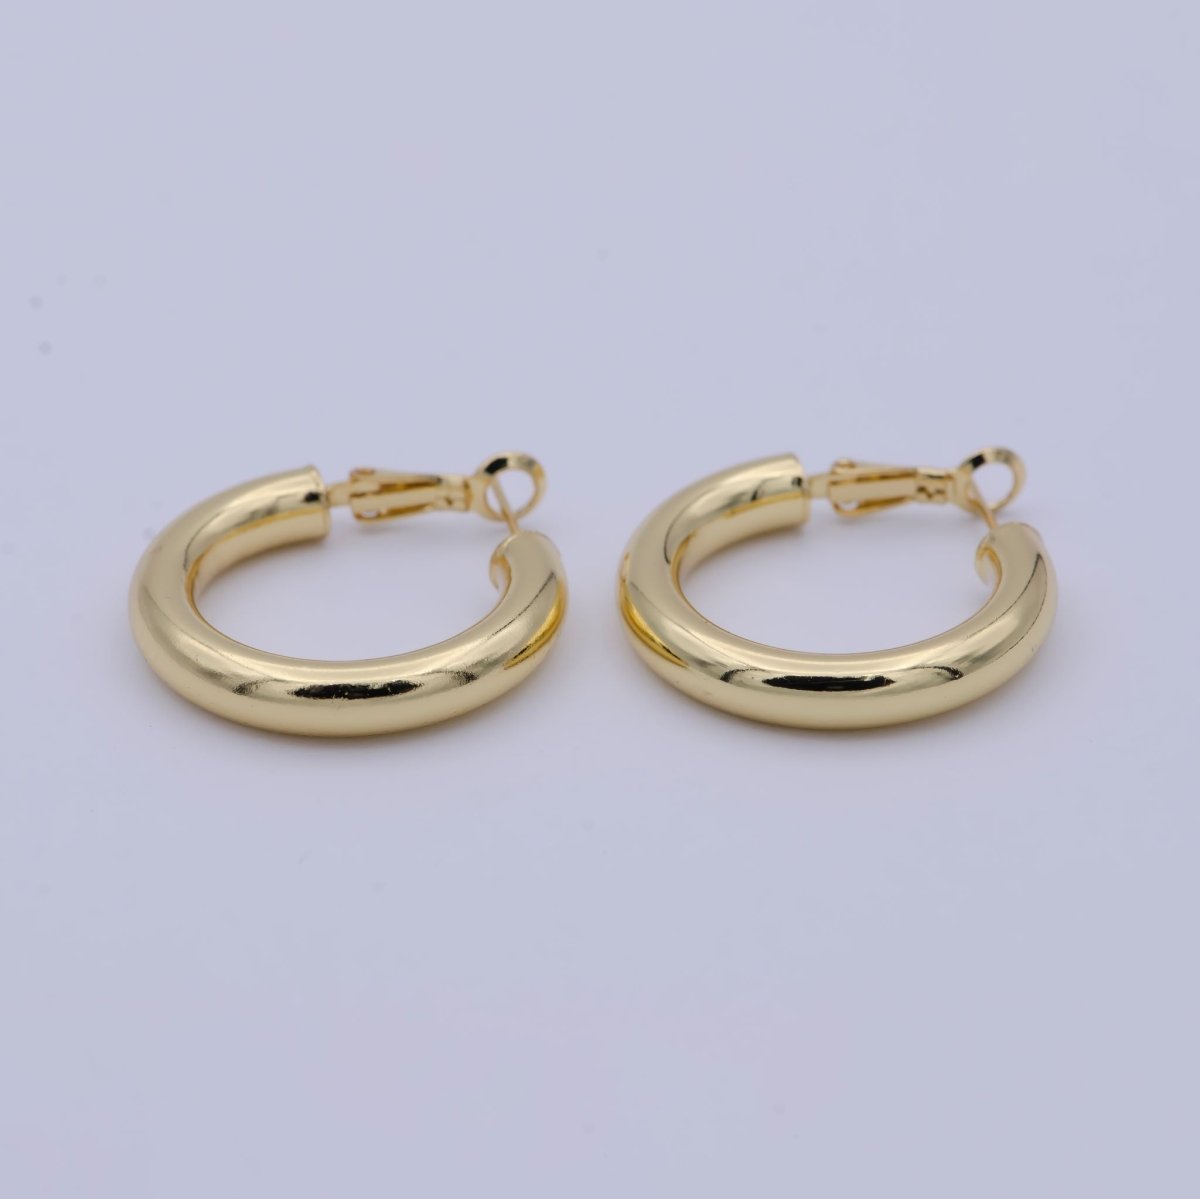 14k Gold Filled Hinged Hoops, Huggie Hoop Earrings, 30mm Tube, Hoop Flex Earrings for Everyday Wear Hypoallergenic T-245 - DLUXCA